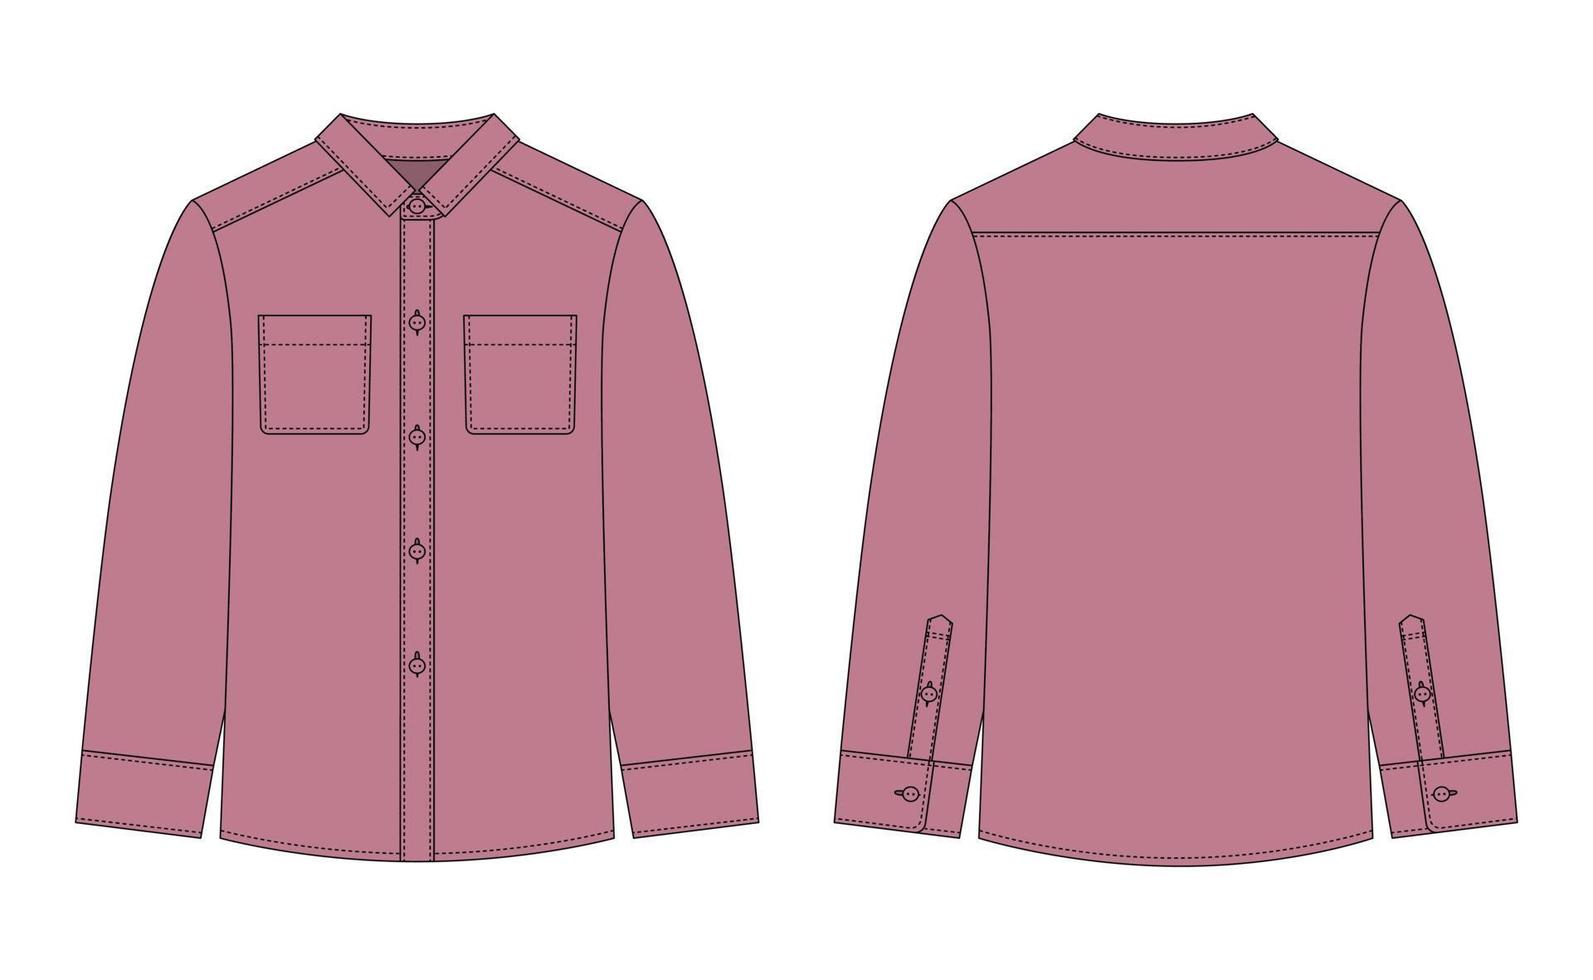 camisa en blanco con dibujo técnico de bolsillos y botones. color pudra. maqueta de camisa casual unisex. vector